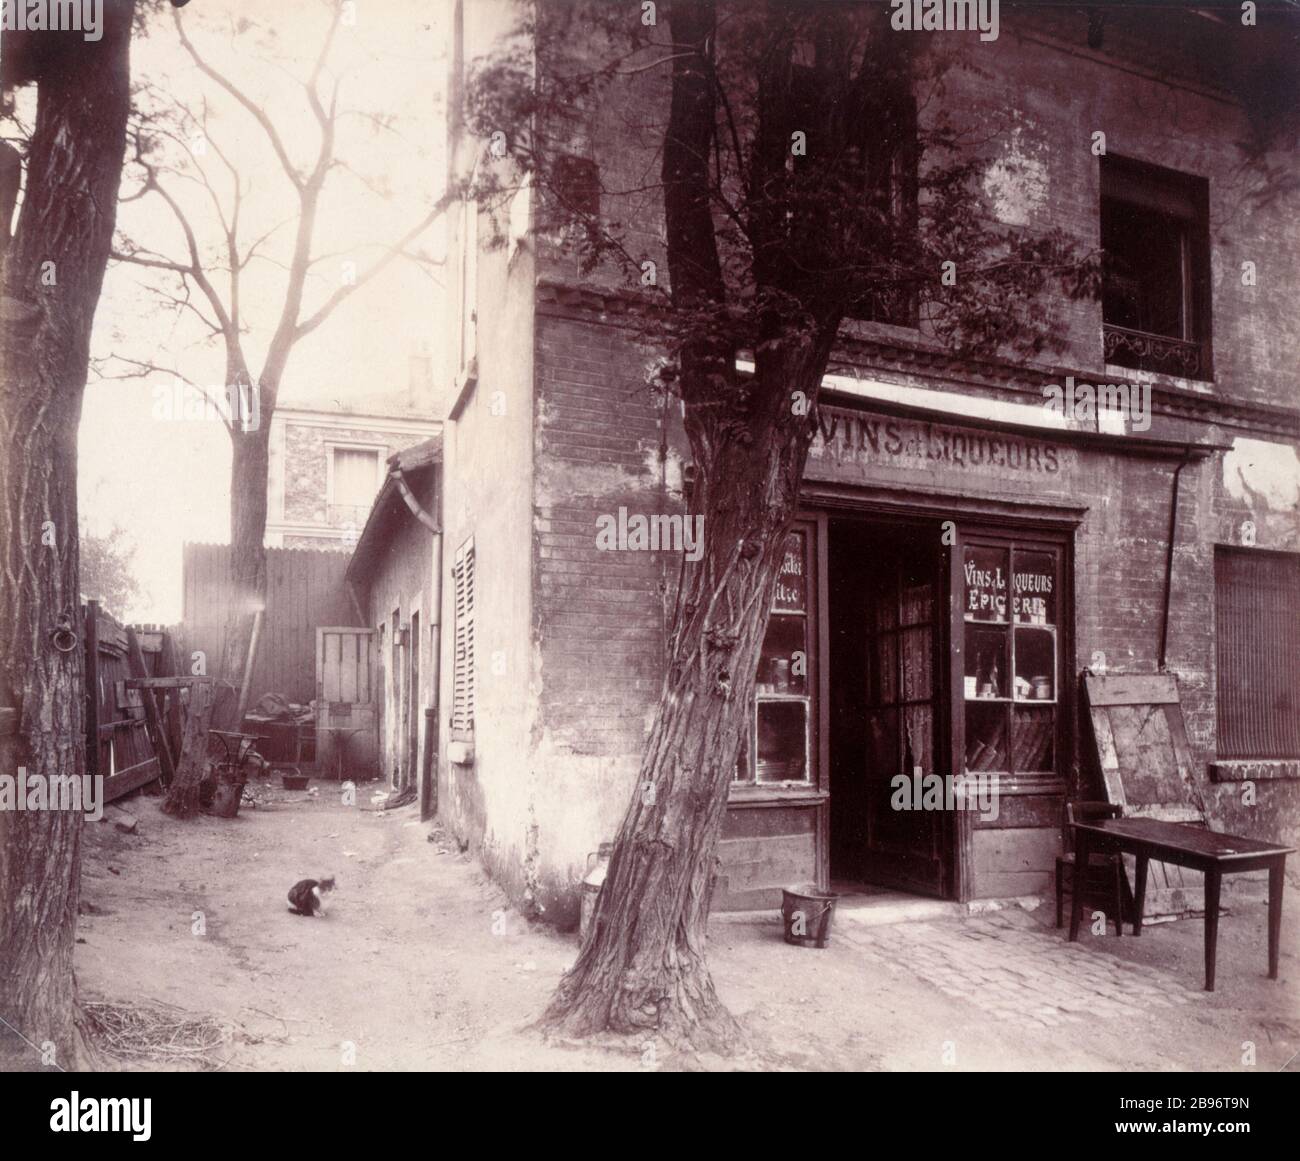 TÜR IVRY Porte d'Ivry, Boulevard Masséna. Paris (XIIIème), Vers 1907-1908. Photographie d'Eugène Atget (1857-1927). Paris, musée Carnavalet. Stockfoto